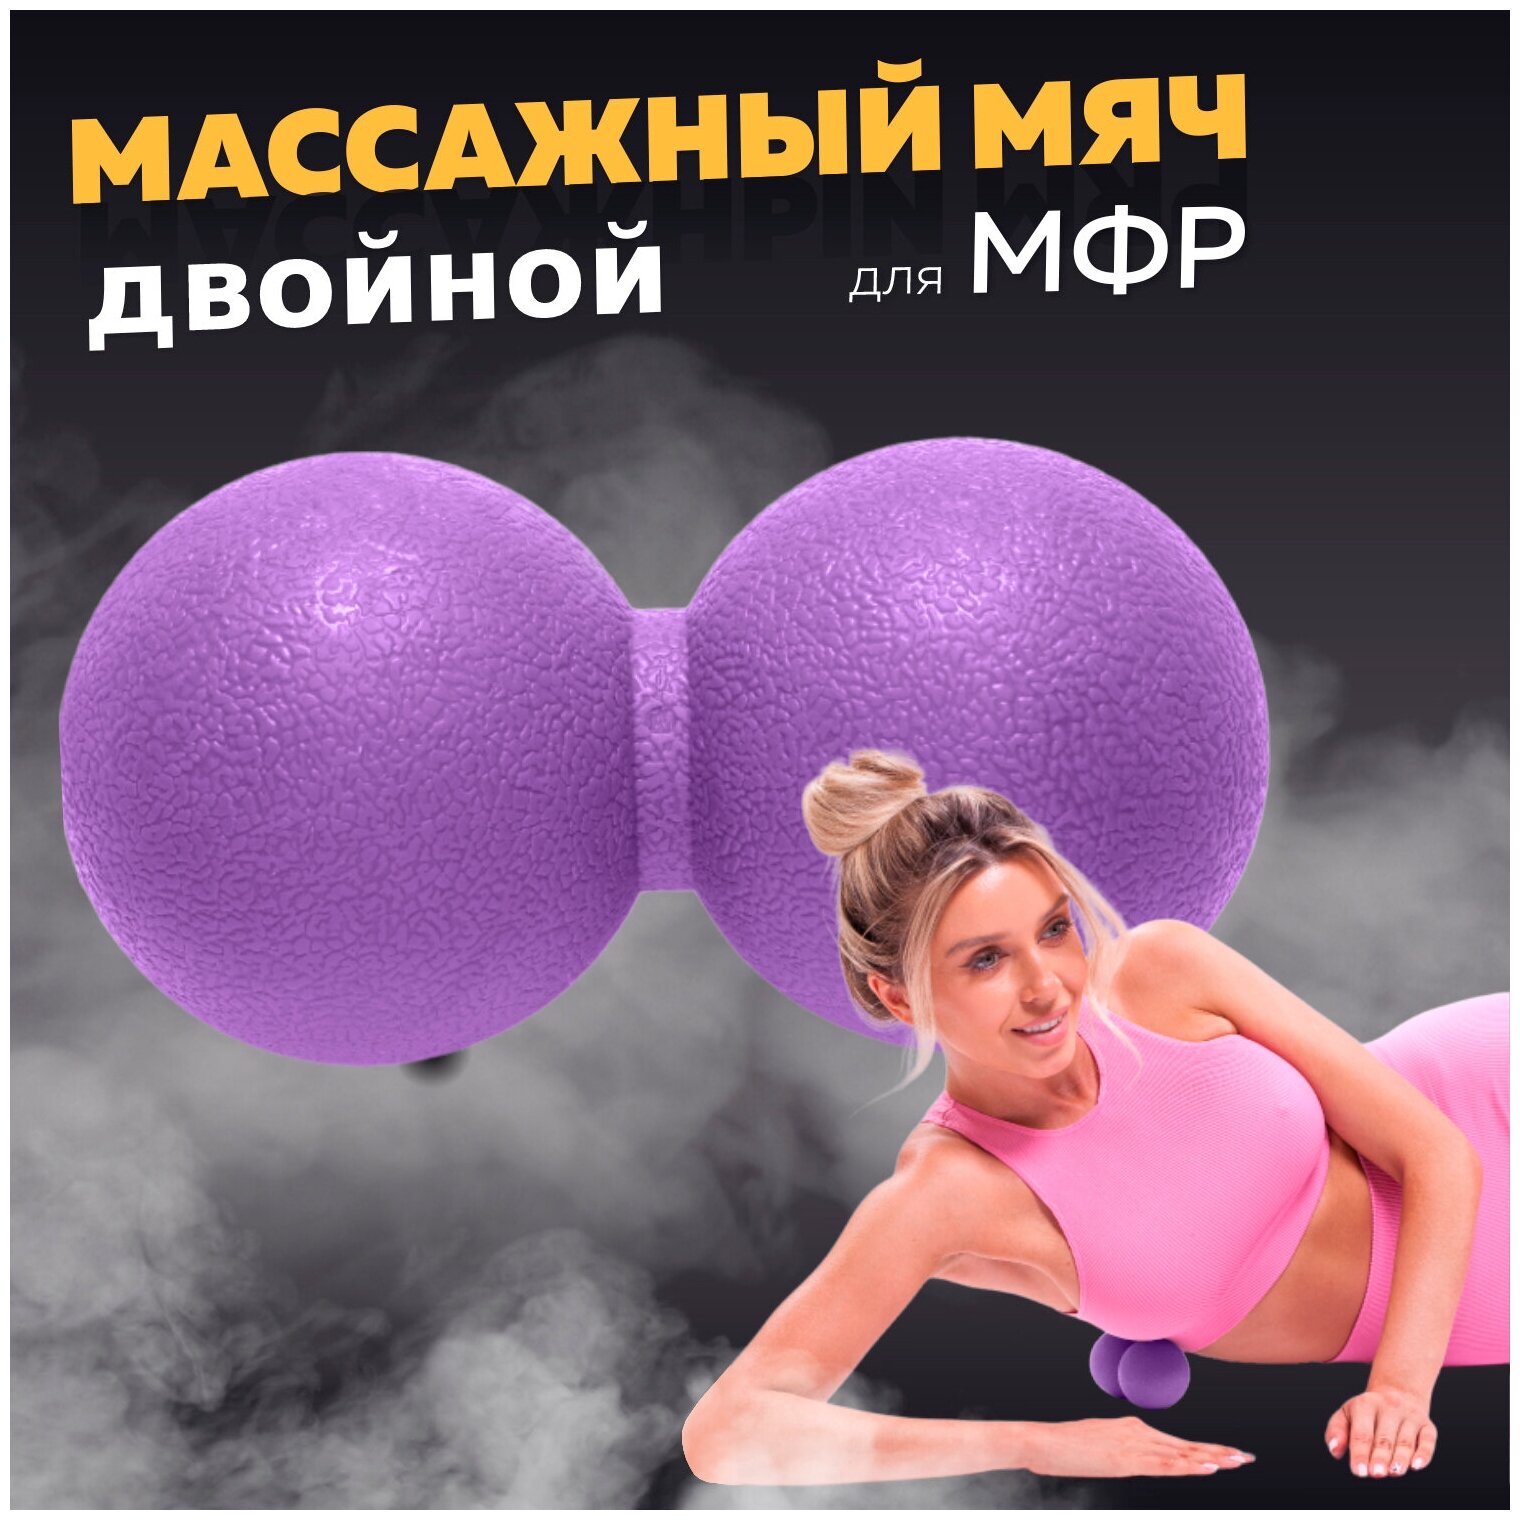 Мяч массажный для МФР двойной, фитнеса и йоги Arushanoff, фиолетовый (M2)